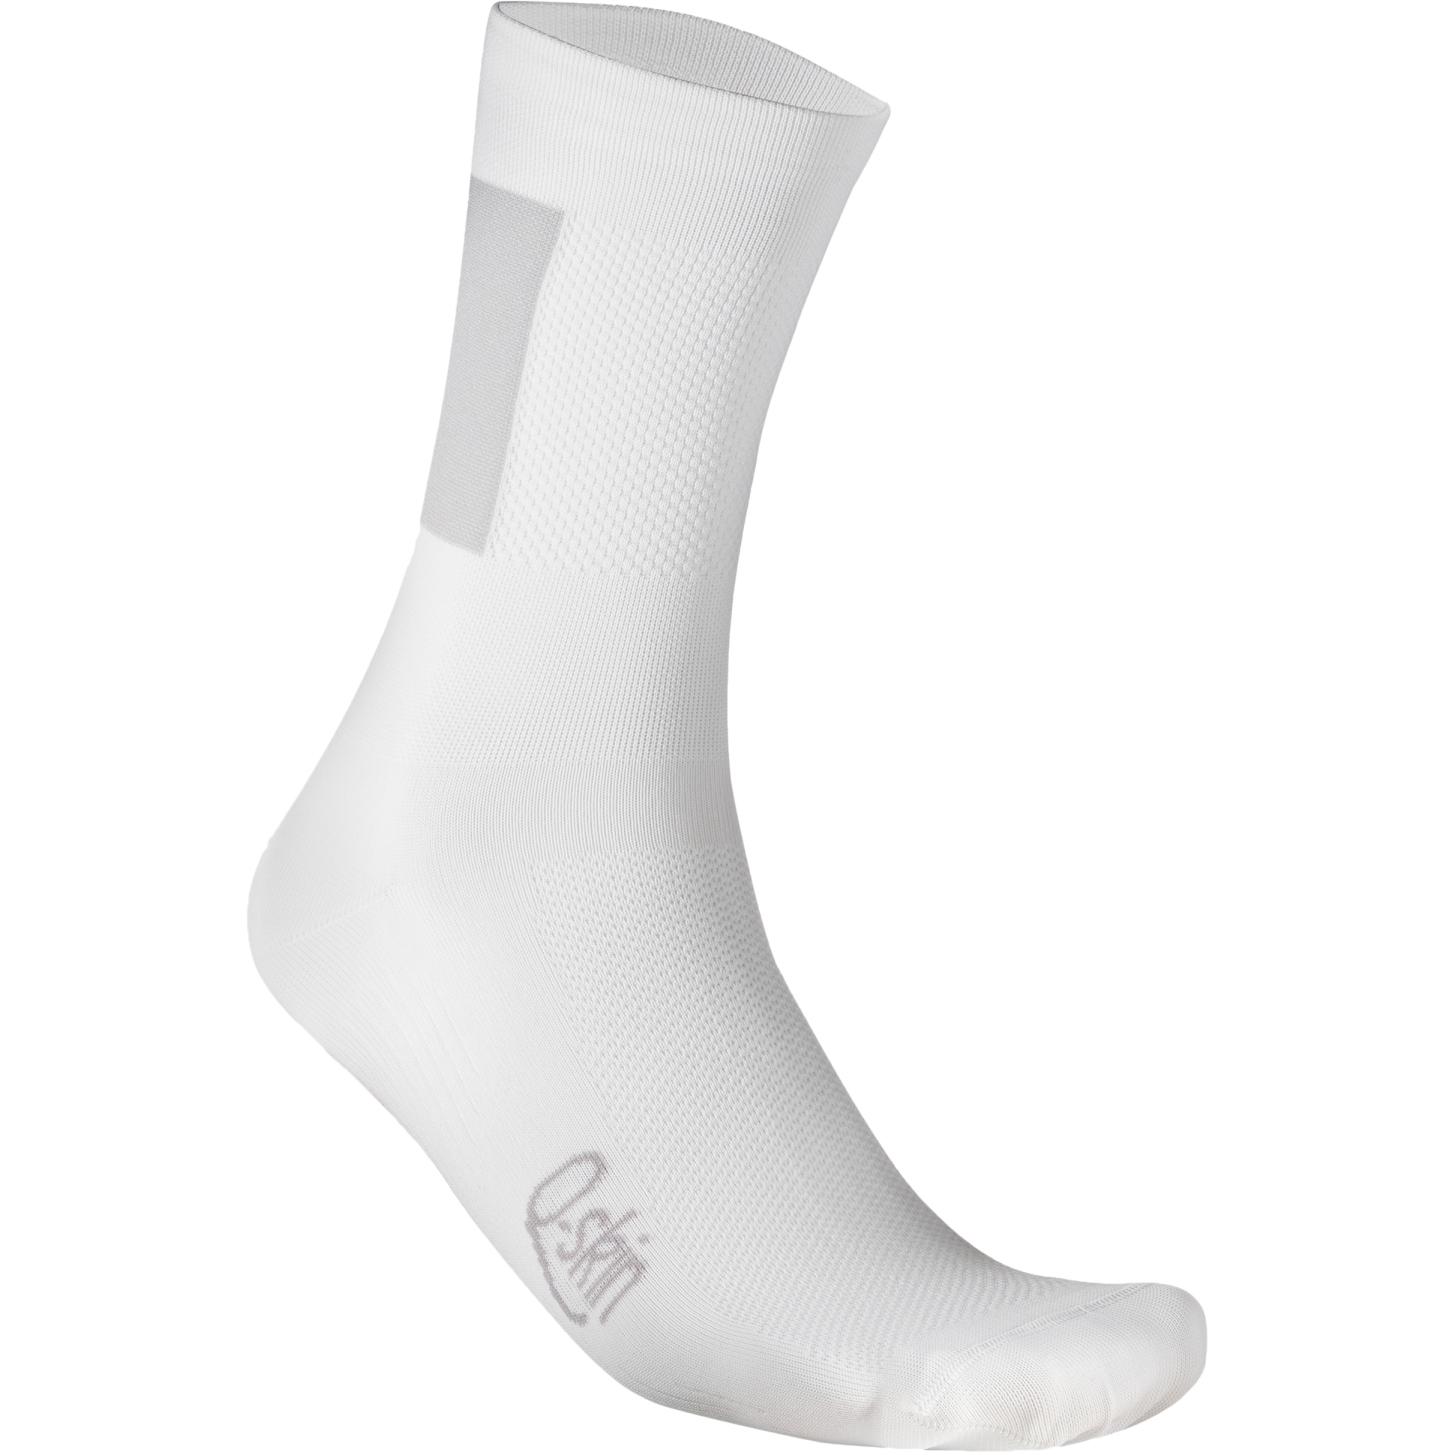 Produktbild von Sportful Snap Socken Herren - 101 Weiß